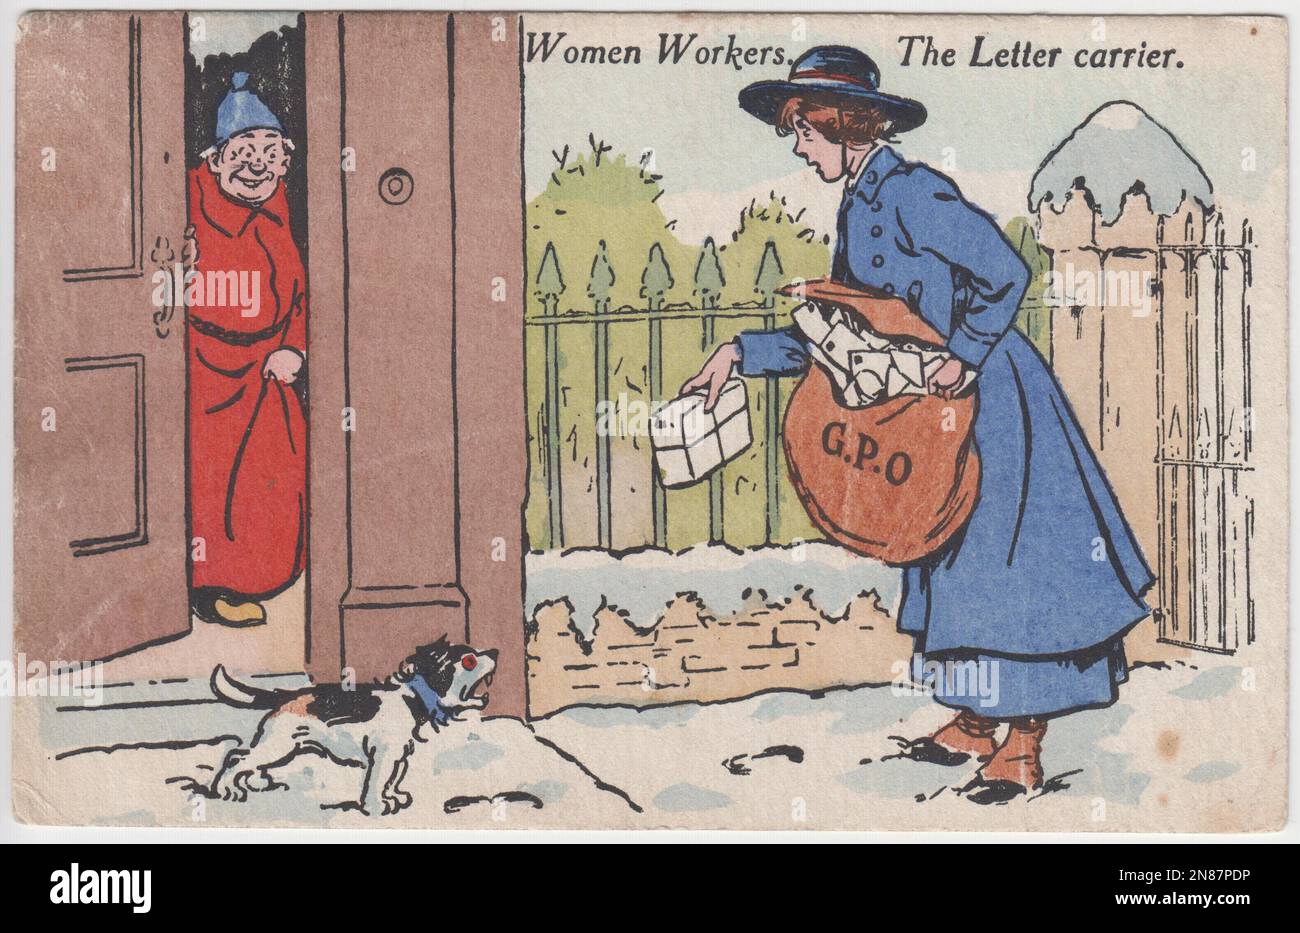 Weibliche Arbeiter. The Letter Cartoon“: Cartoon, in dem eine Postangestellte aus dem Ersten Weltkrieg mit einer Posttasche voller Post und einem Paket mit einer Schnur gezeigt wird. Ein kleiner Hund mit roten Augen bellt sie an, während ein Mann in einem roten Nachthemd und einem blauen Schlummertrunk die Szene von einer offenen Tür aus lächelt. Es liegt Schnee auf dem Boden Stockfoto